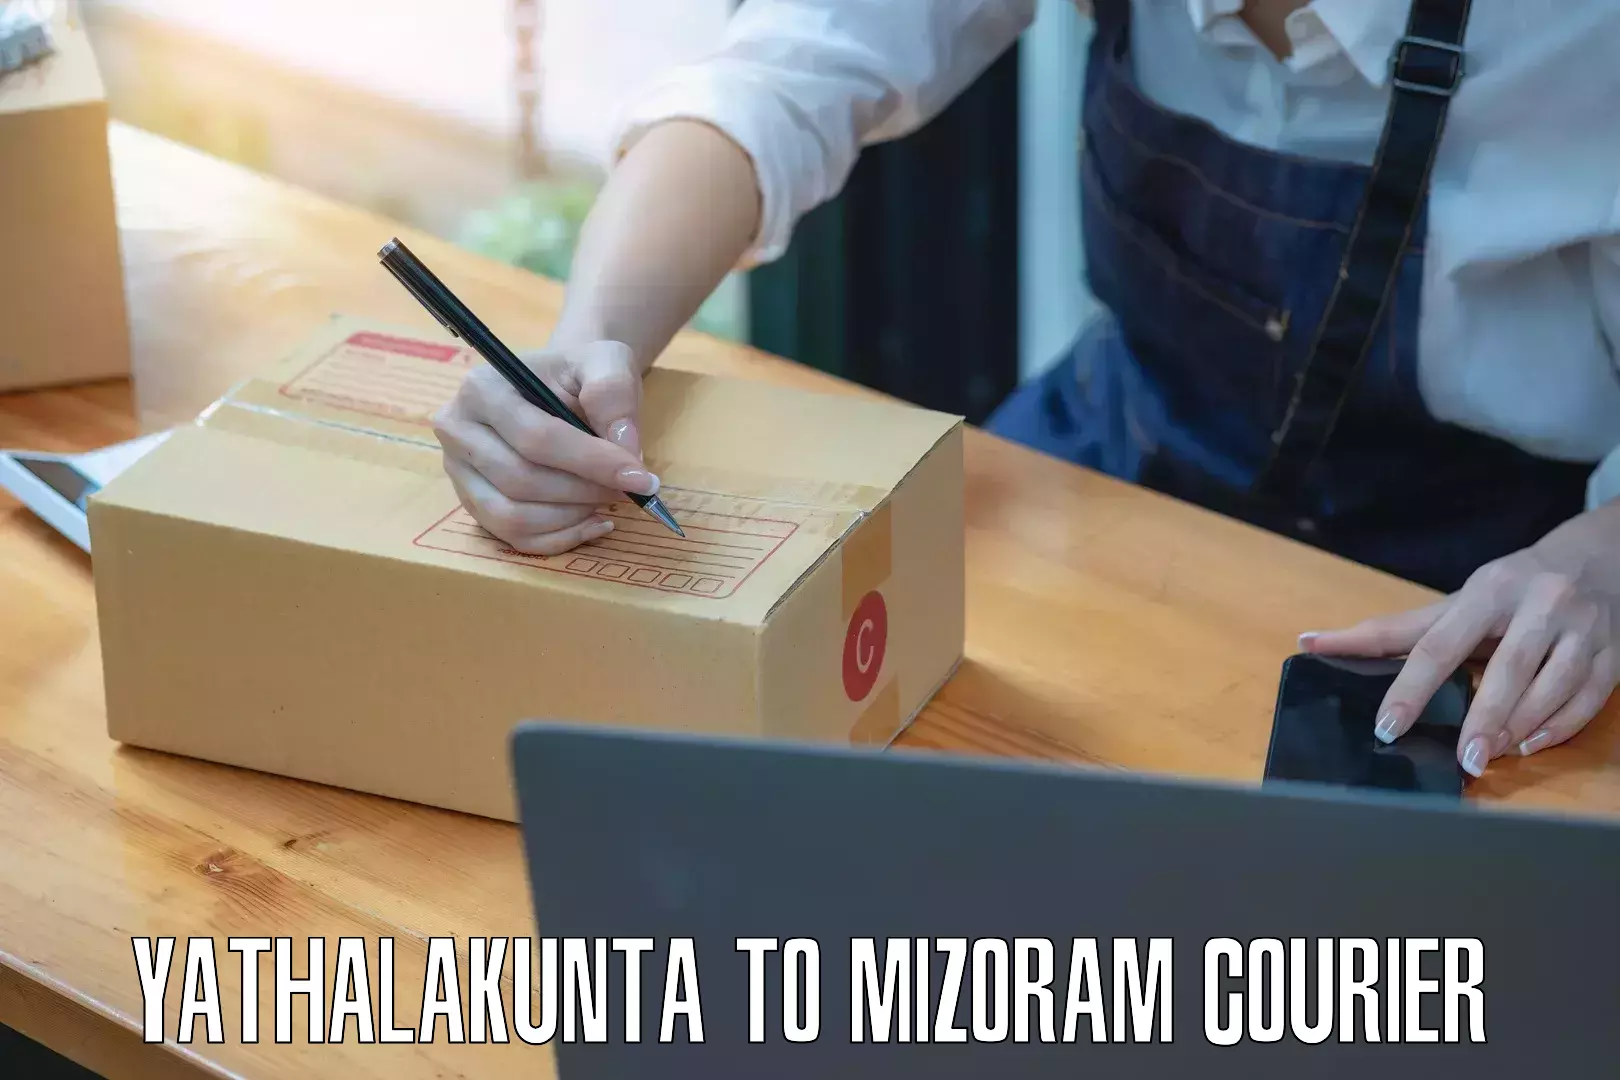 Courier service partnerships Yathalakunta to Mizoram